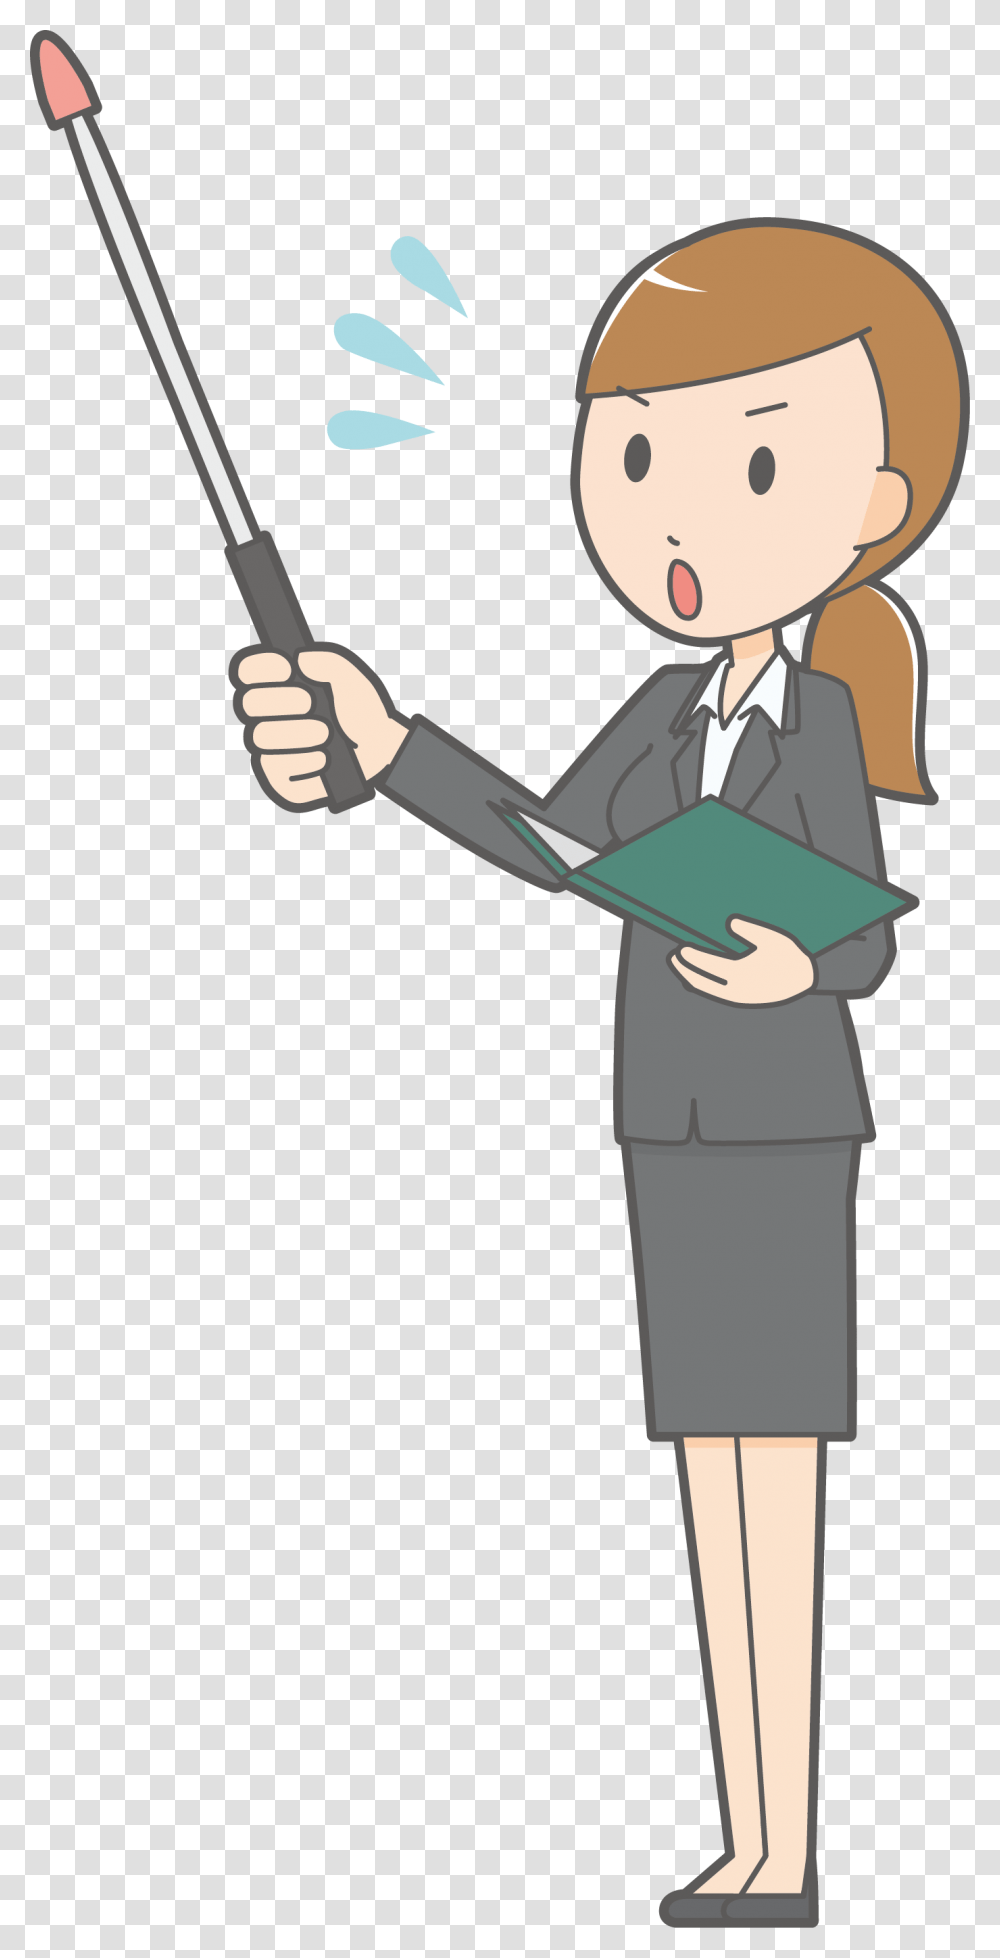 Cartoon Teacher Woman Cartoon Teacher Background, Performer, Hand, Shovel, Magician Transparent Png